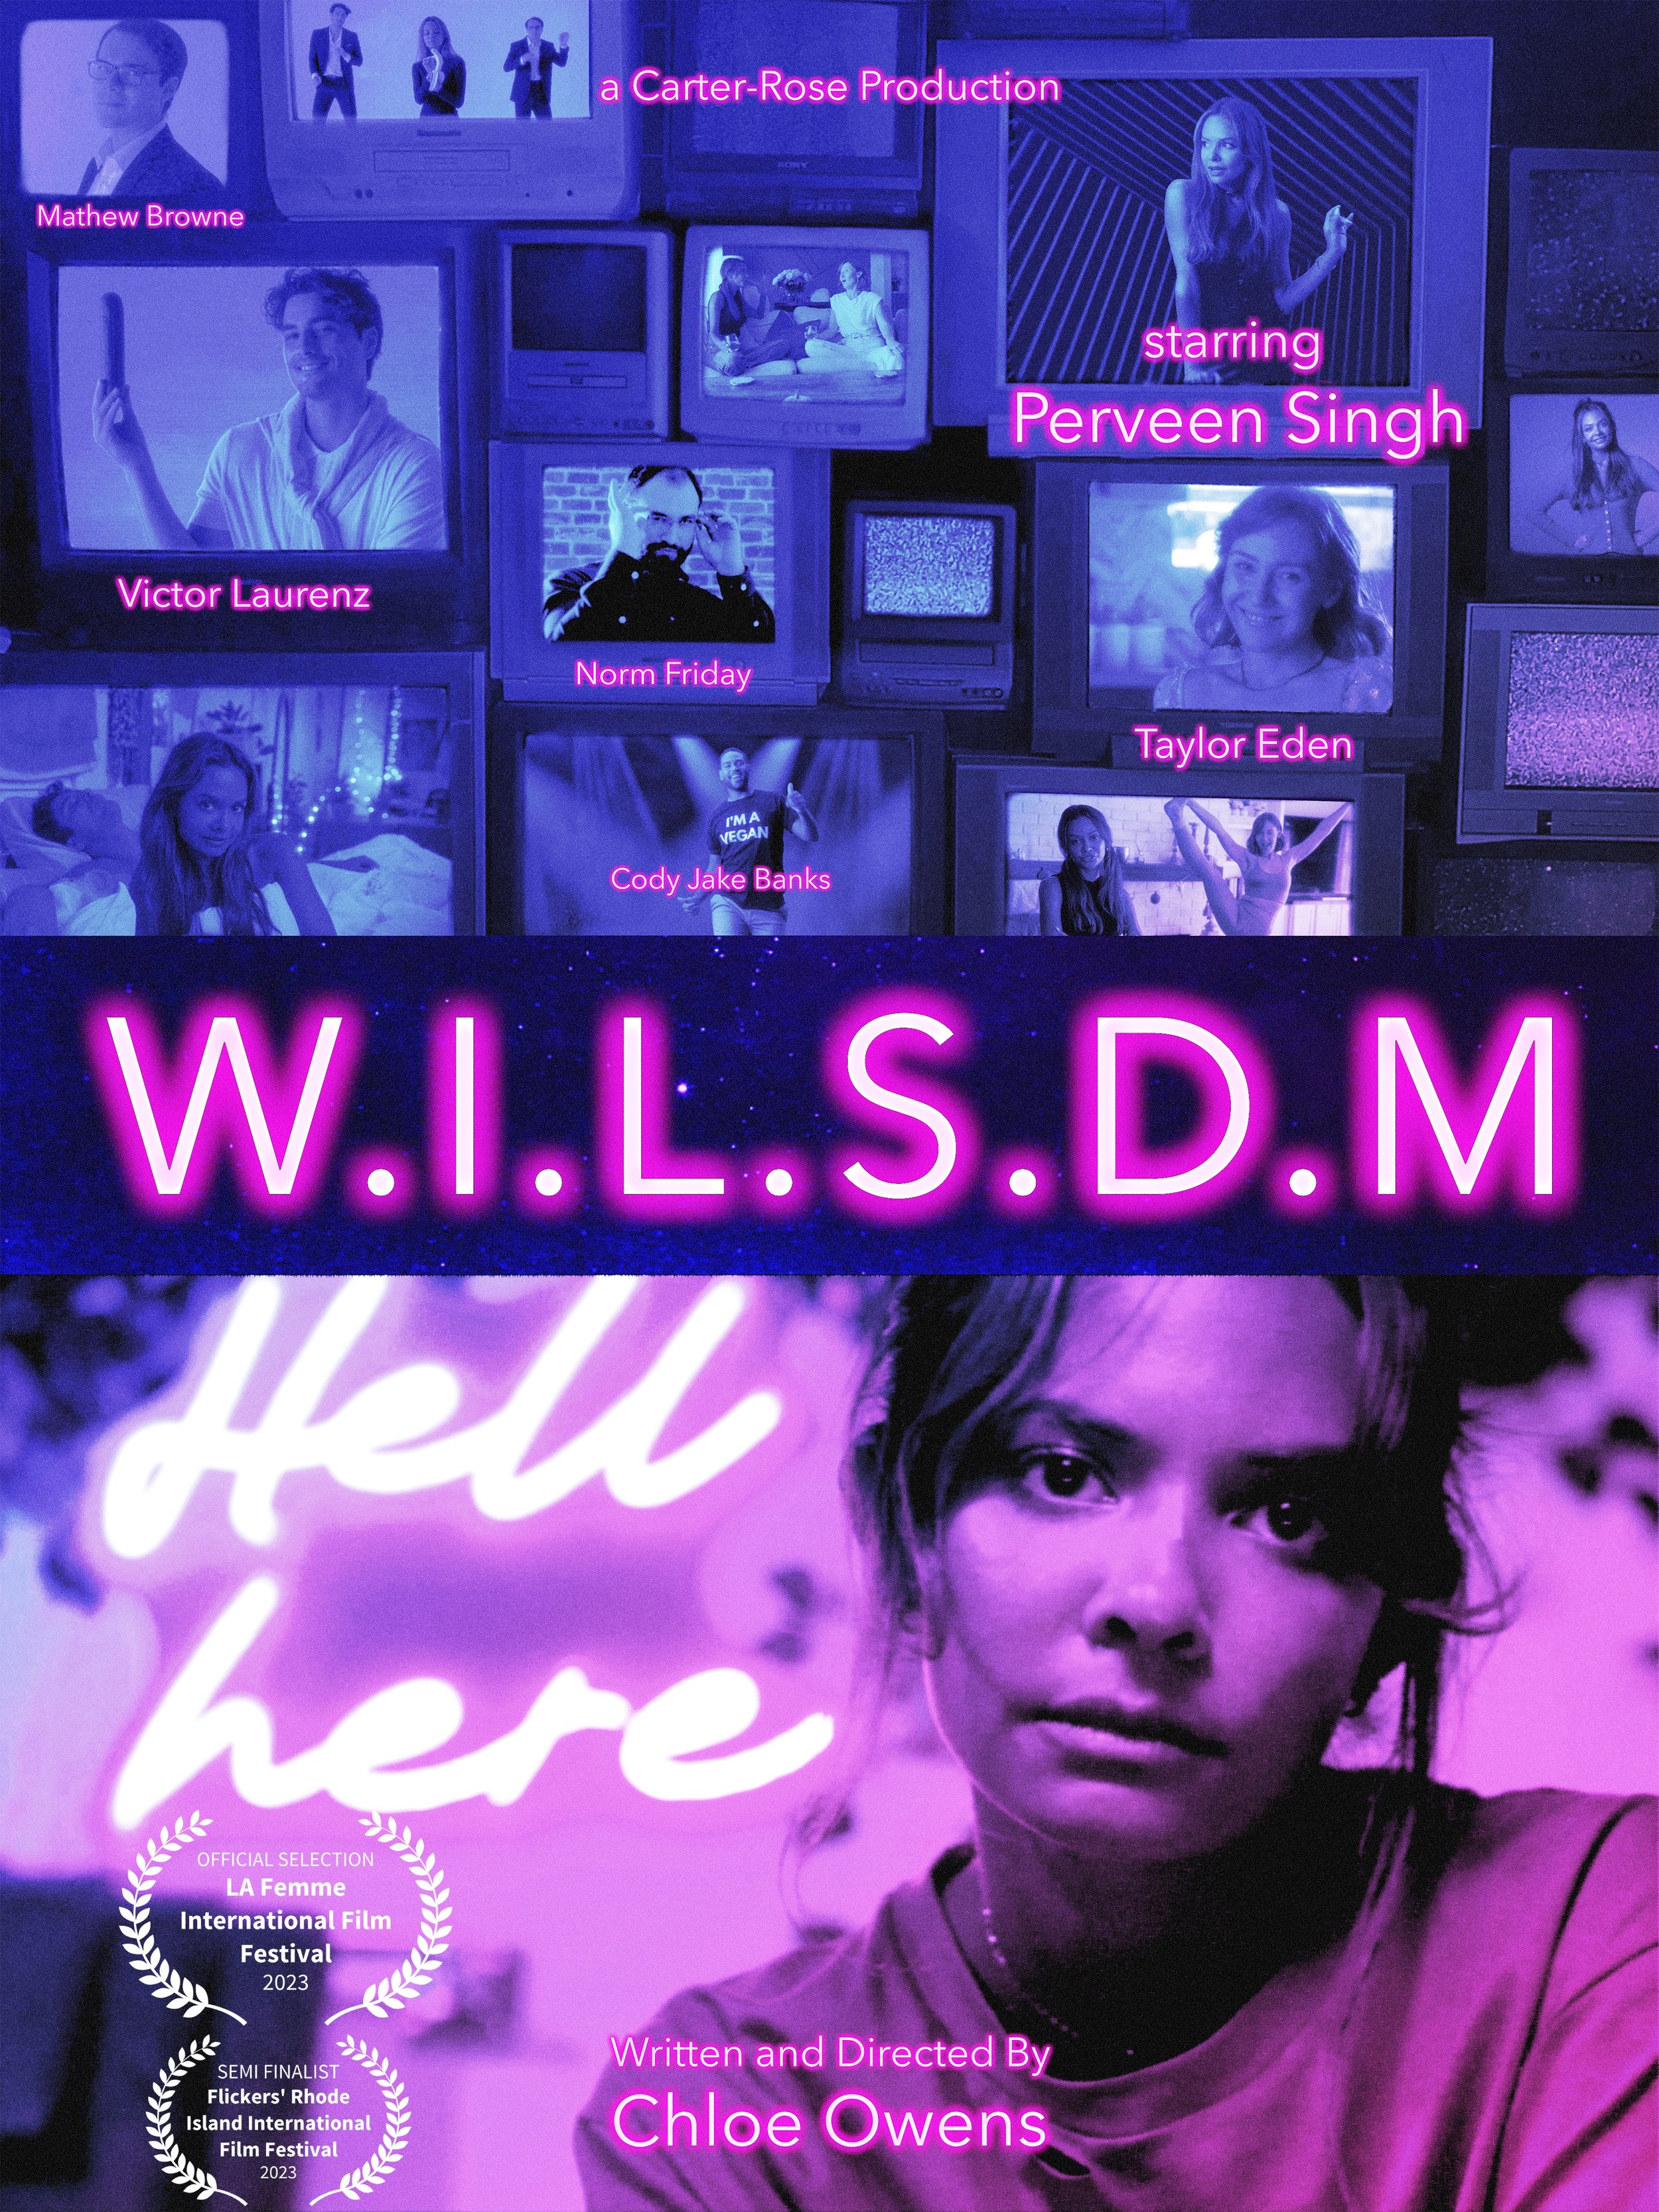 W.I.L.S.D.M movie poster 2.jpg